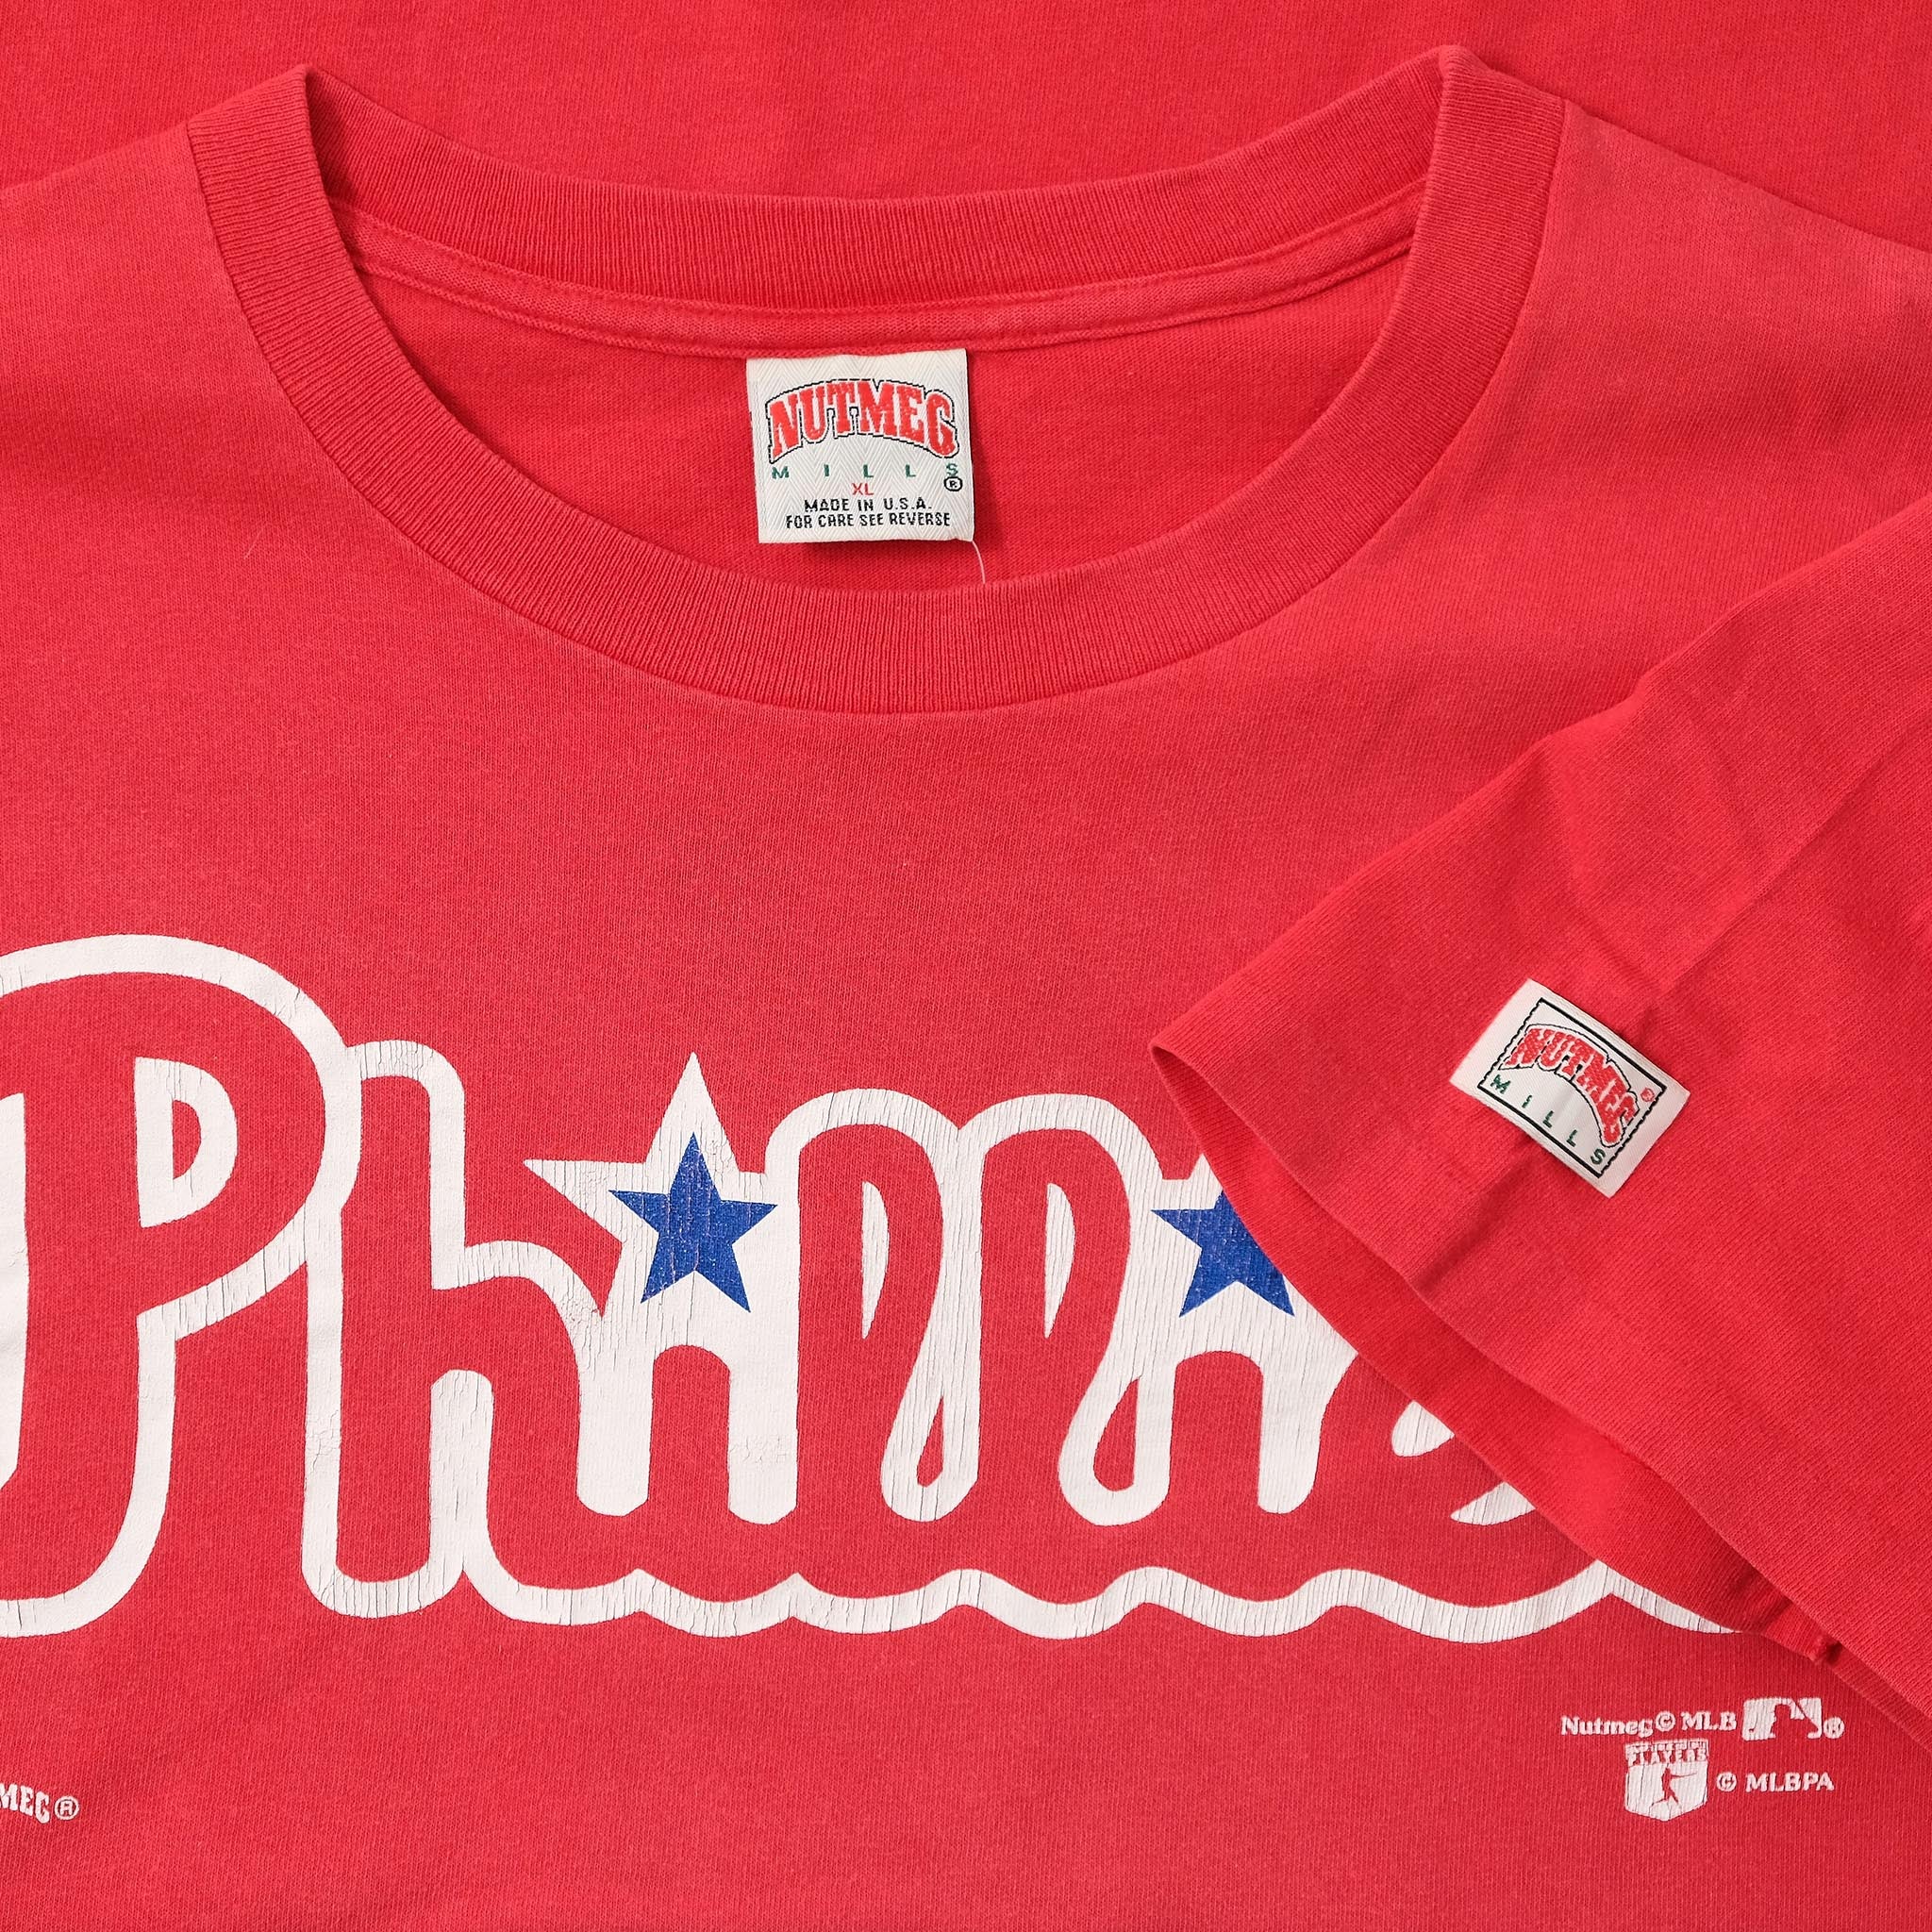 Vintage Nutmeg Philadelphia Phillies T-Shirt XLarge